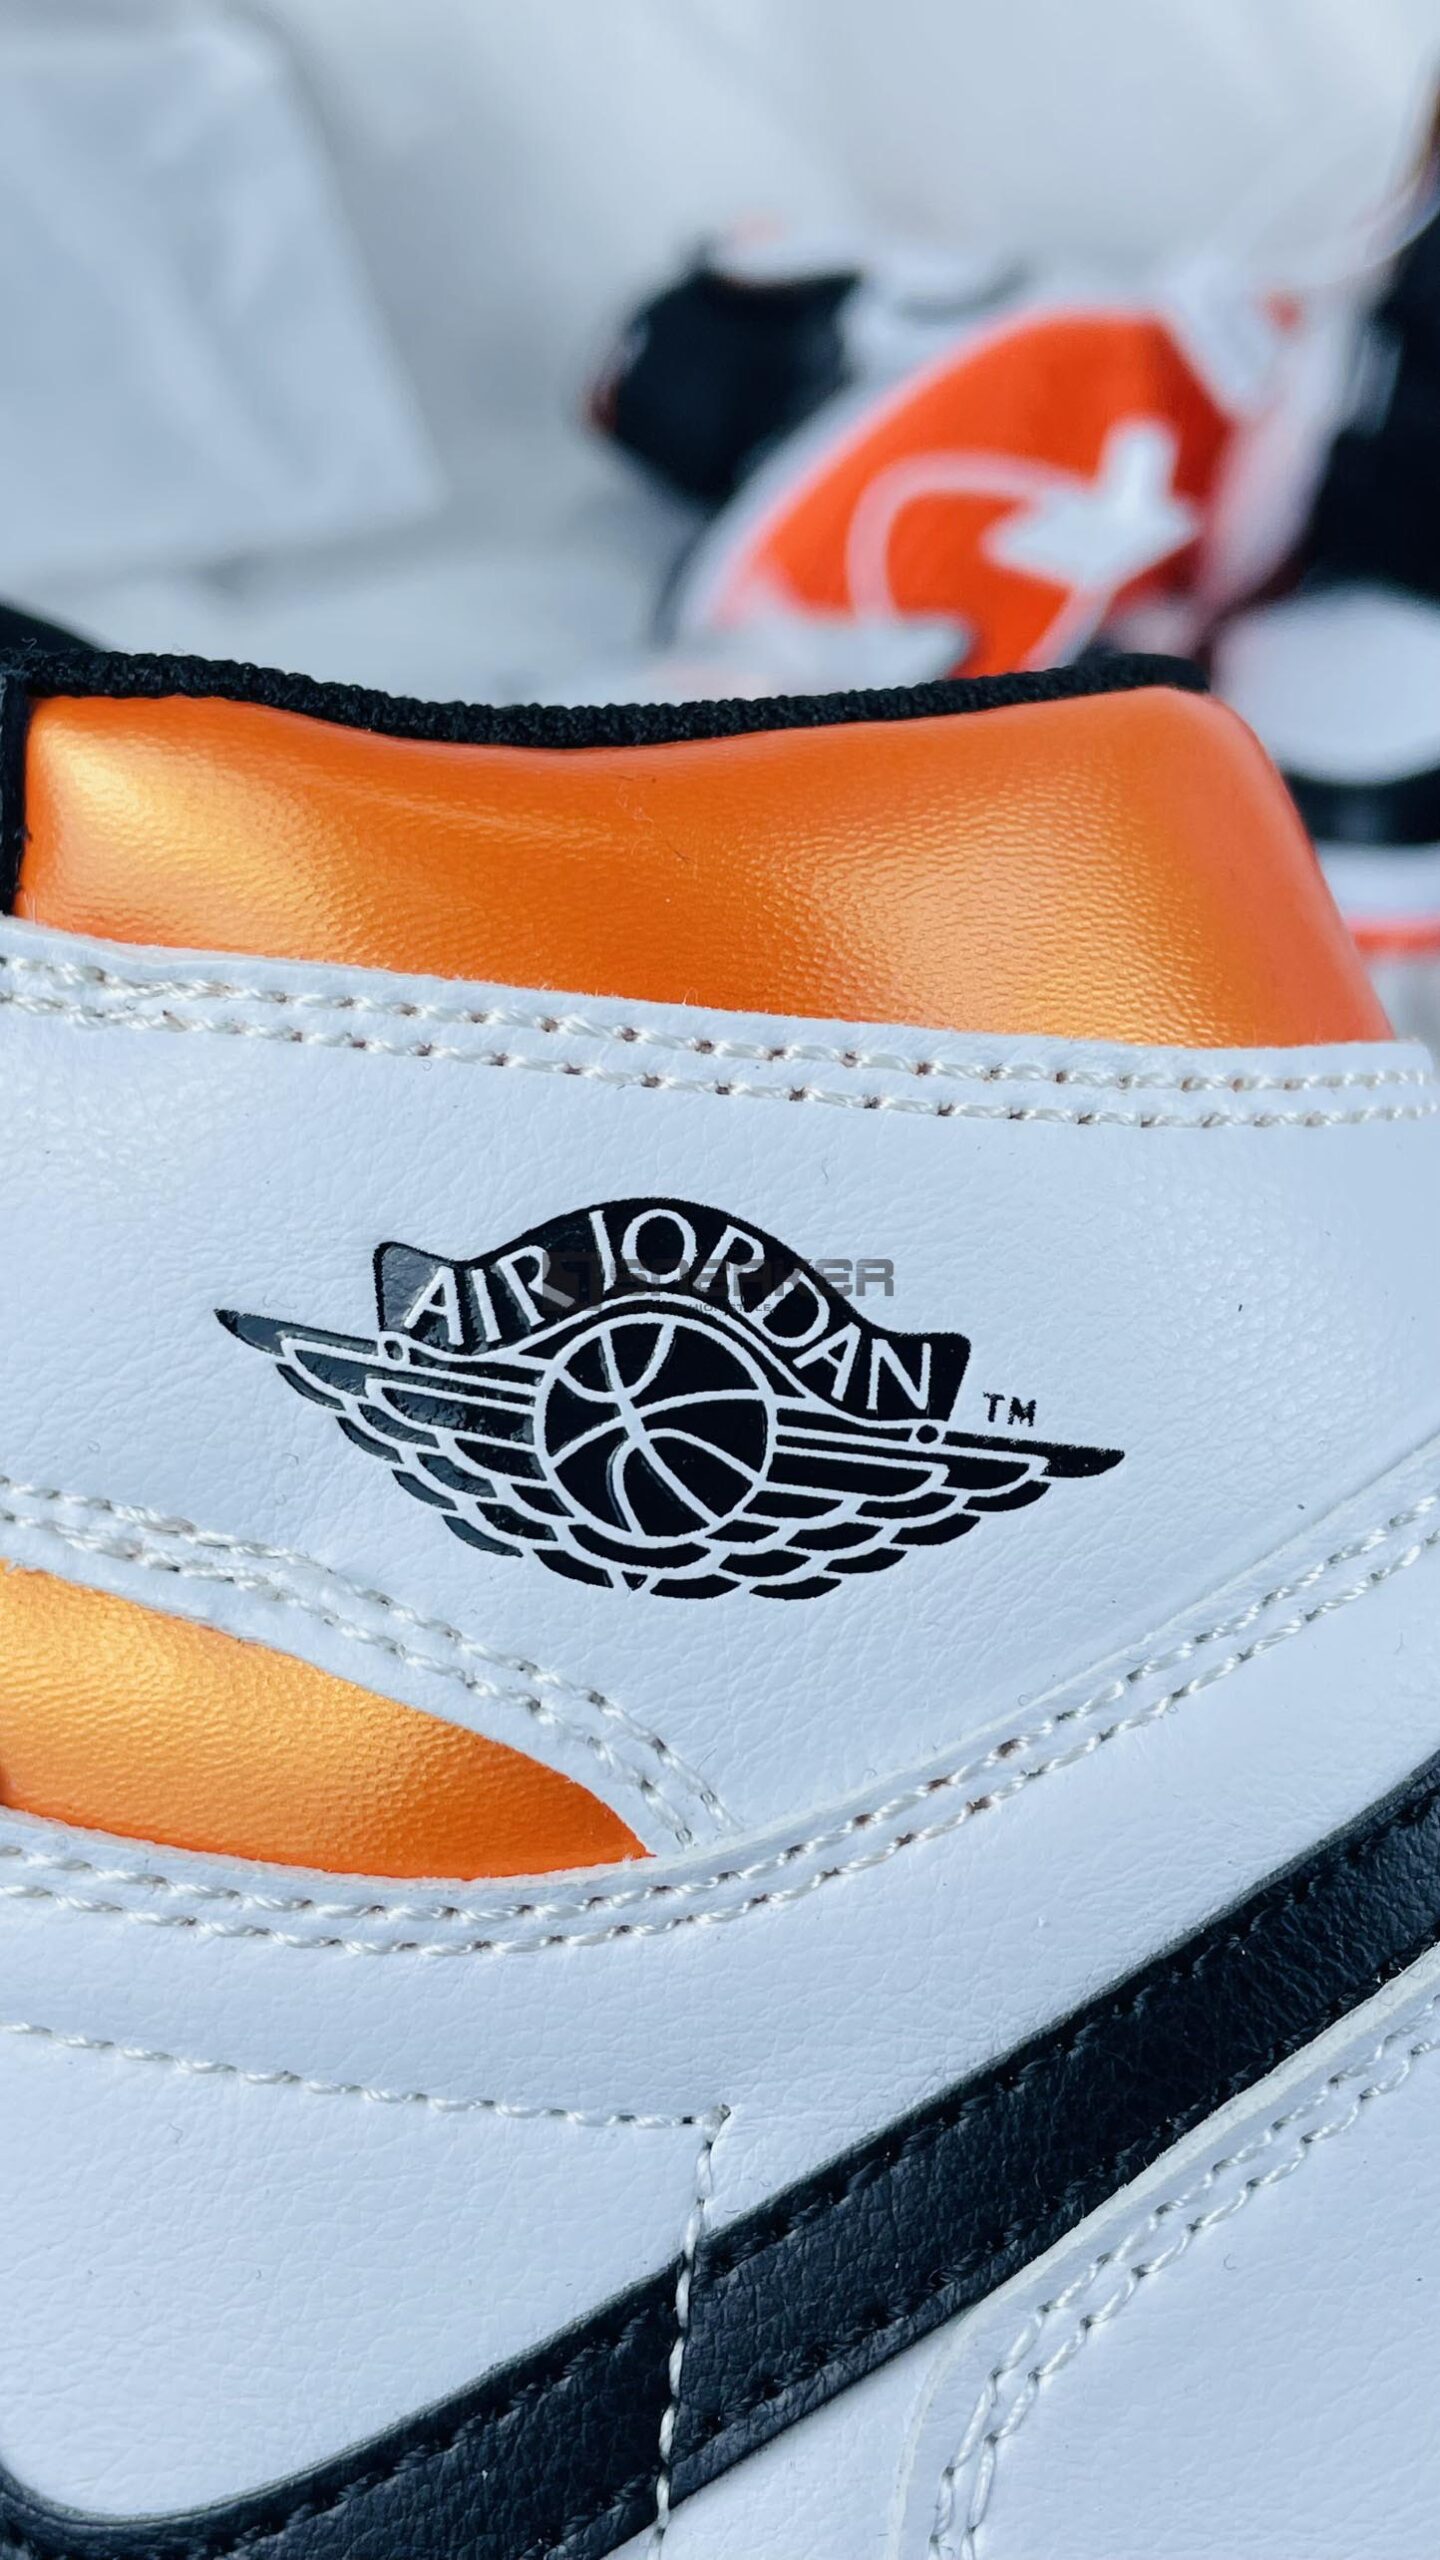 Giày Nike Air Jordan 1 Retro High OG Electro Orange đường chỉ thêu và logo đậm chất phong cách